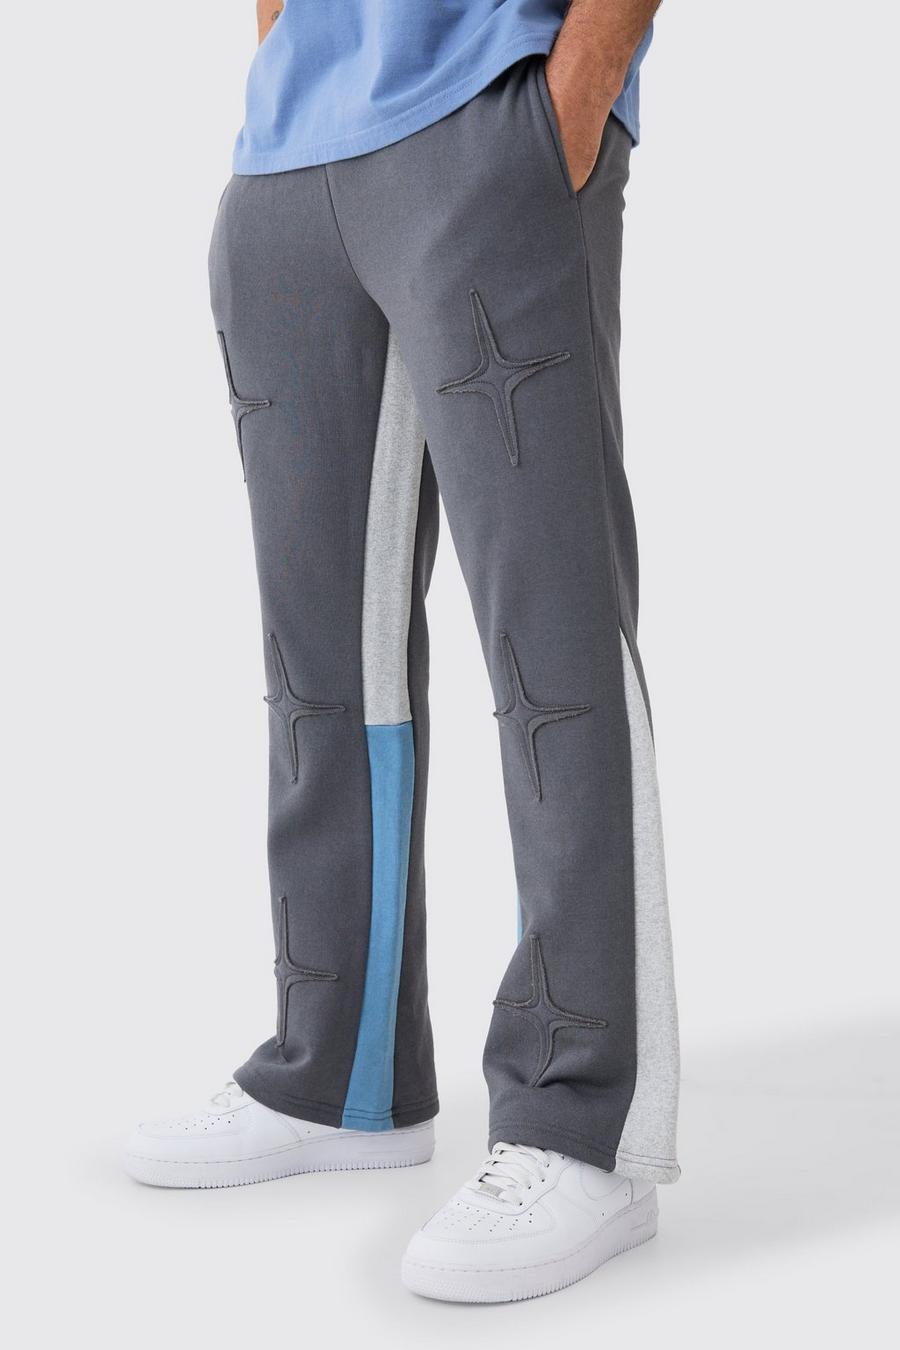 Pantaloni tuta Regular Fit con applique e inserti, Charcoal